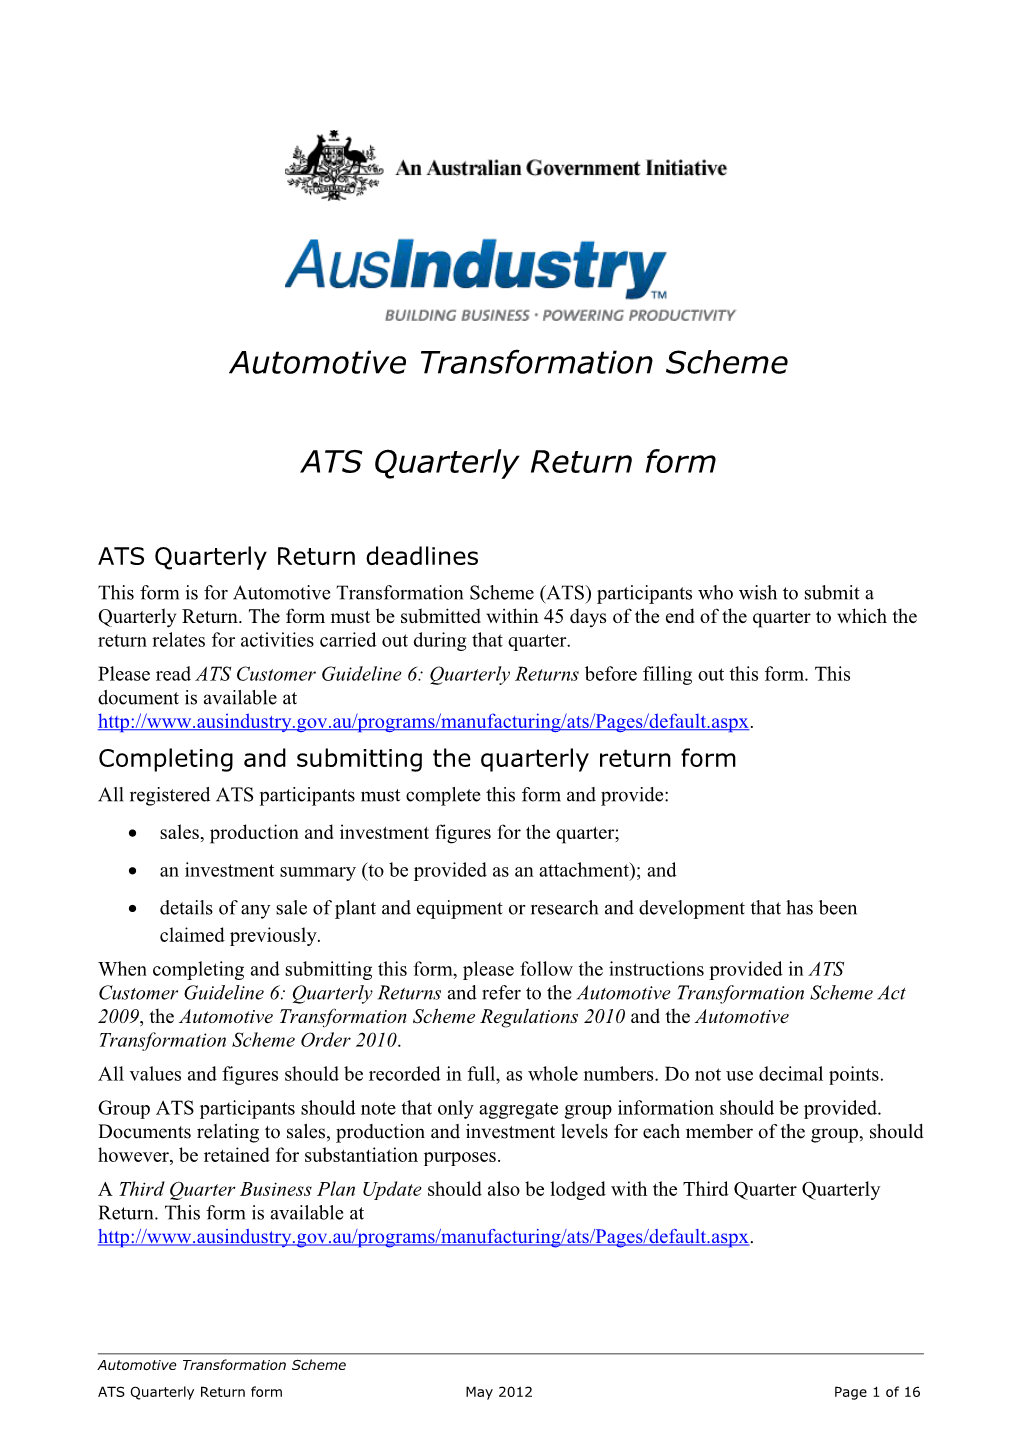 ATS Quarterly Return Form